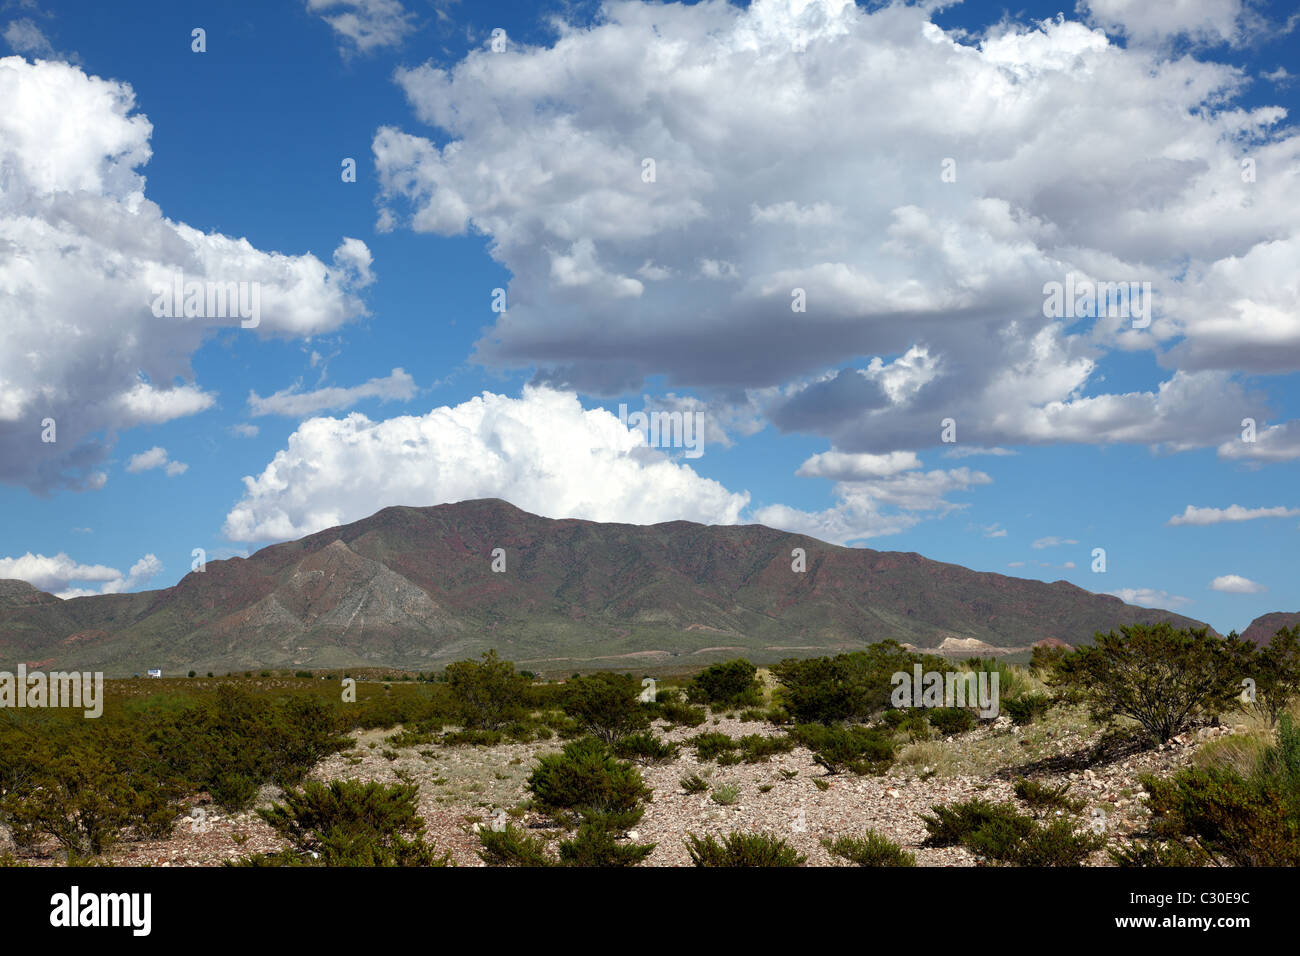 Paesaggio delle montagne del deserto di El Paso, Texas con cielo nuvoloso Foto Stock